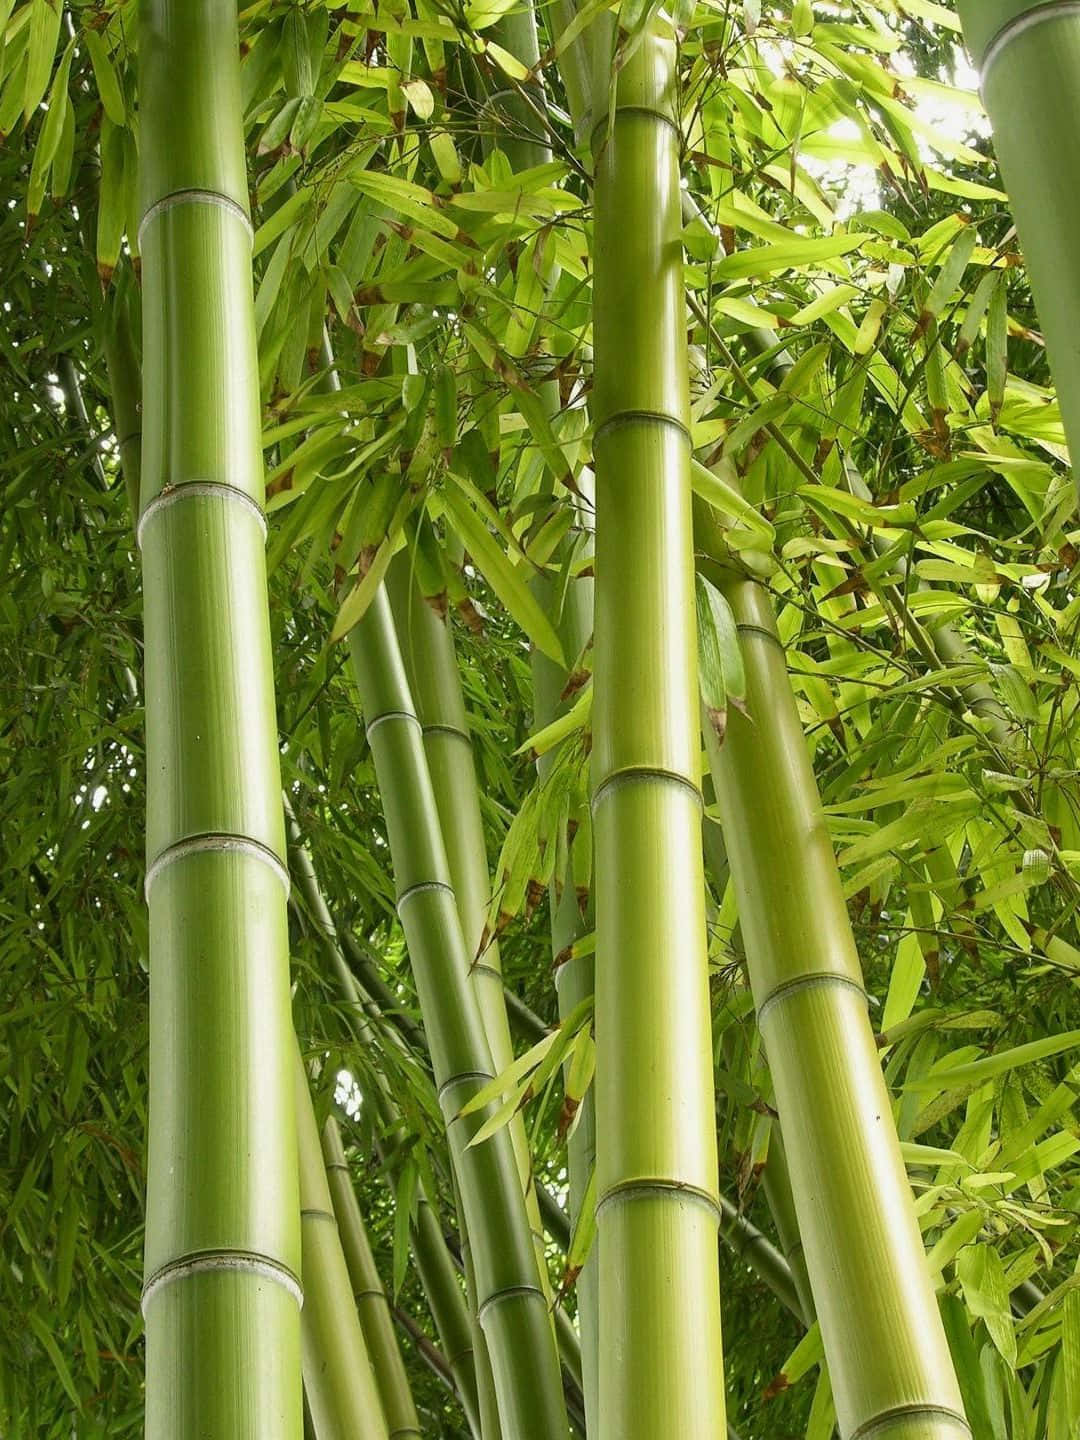 1440pfondo De Pantalla De Bambú - Árboles De Bambú De Color Verde Claro Con Hojas.